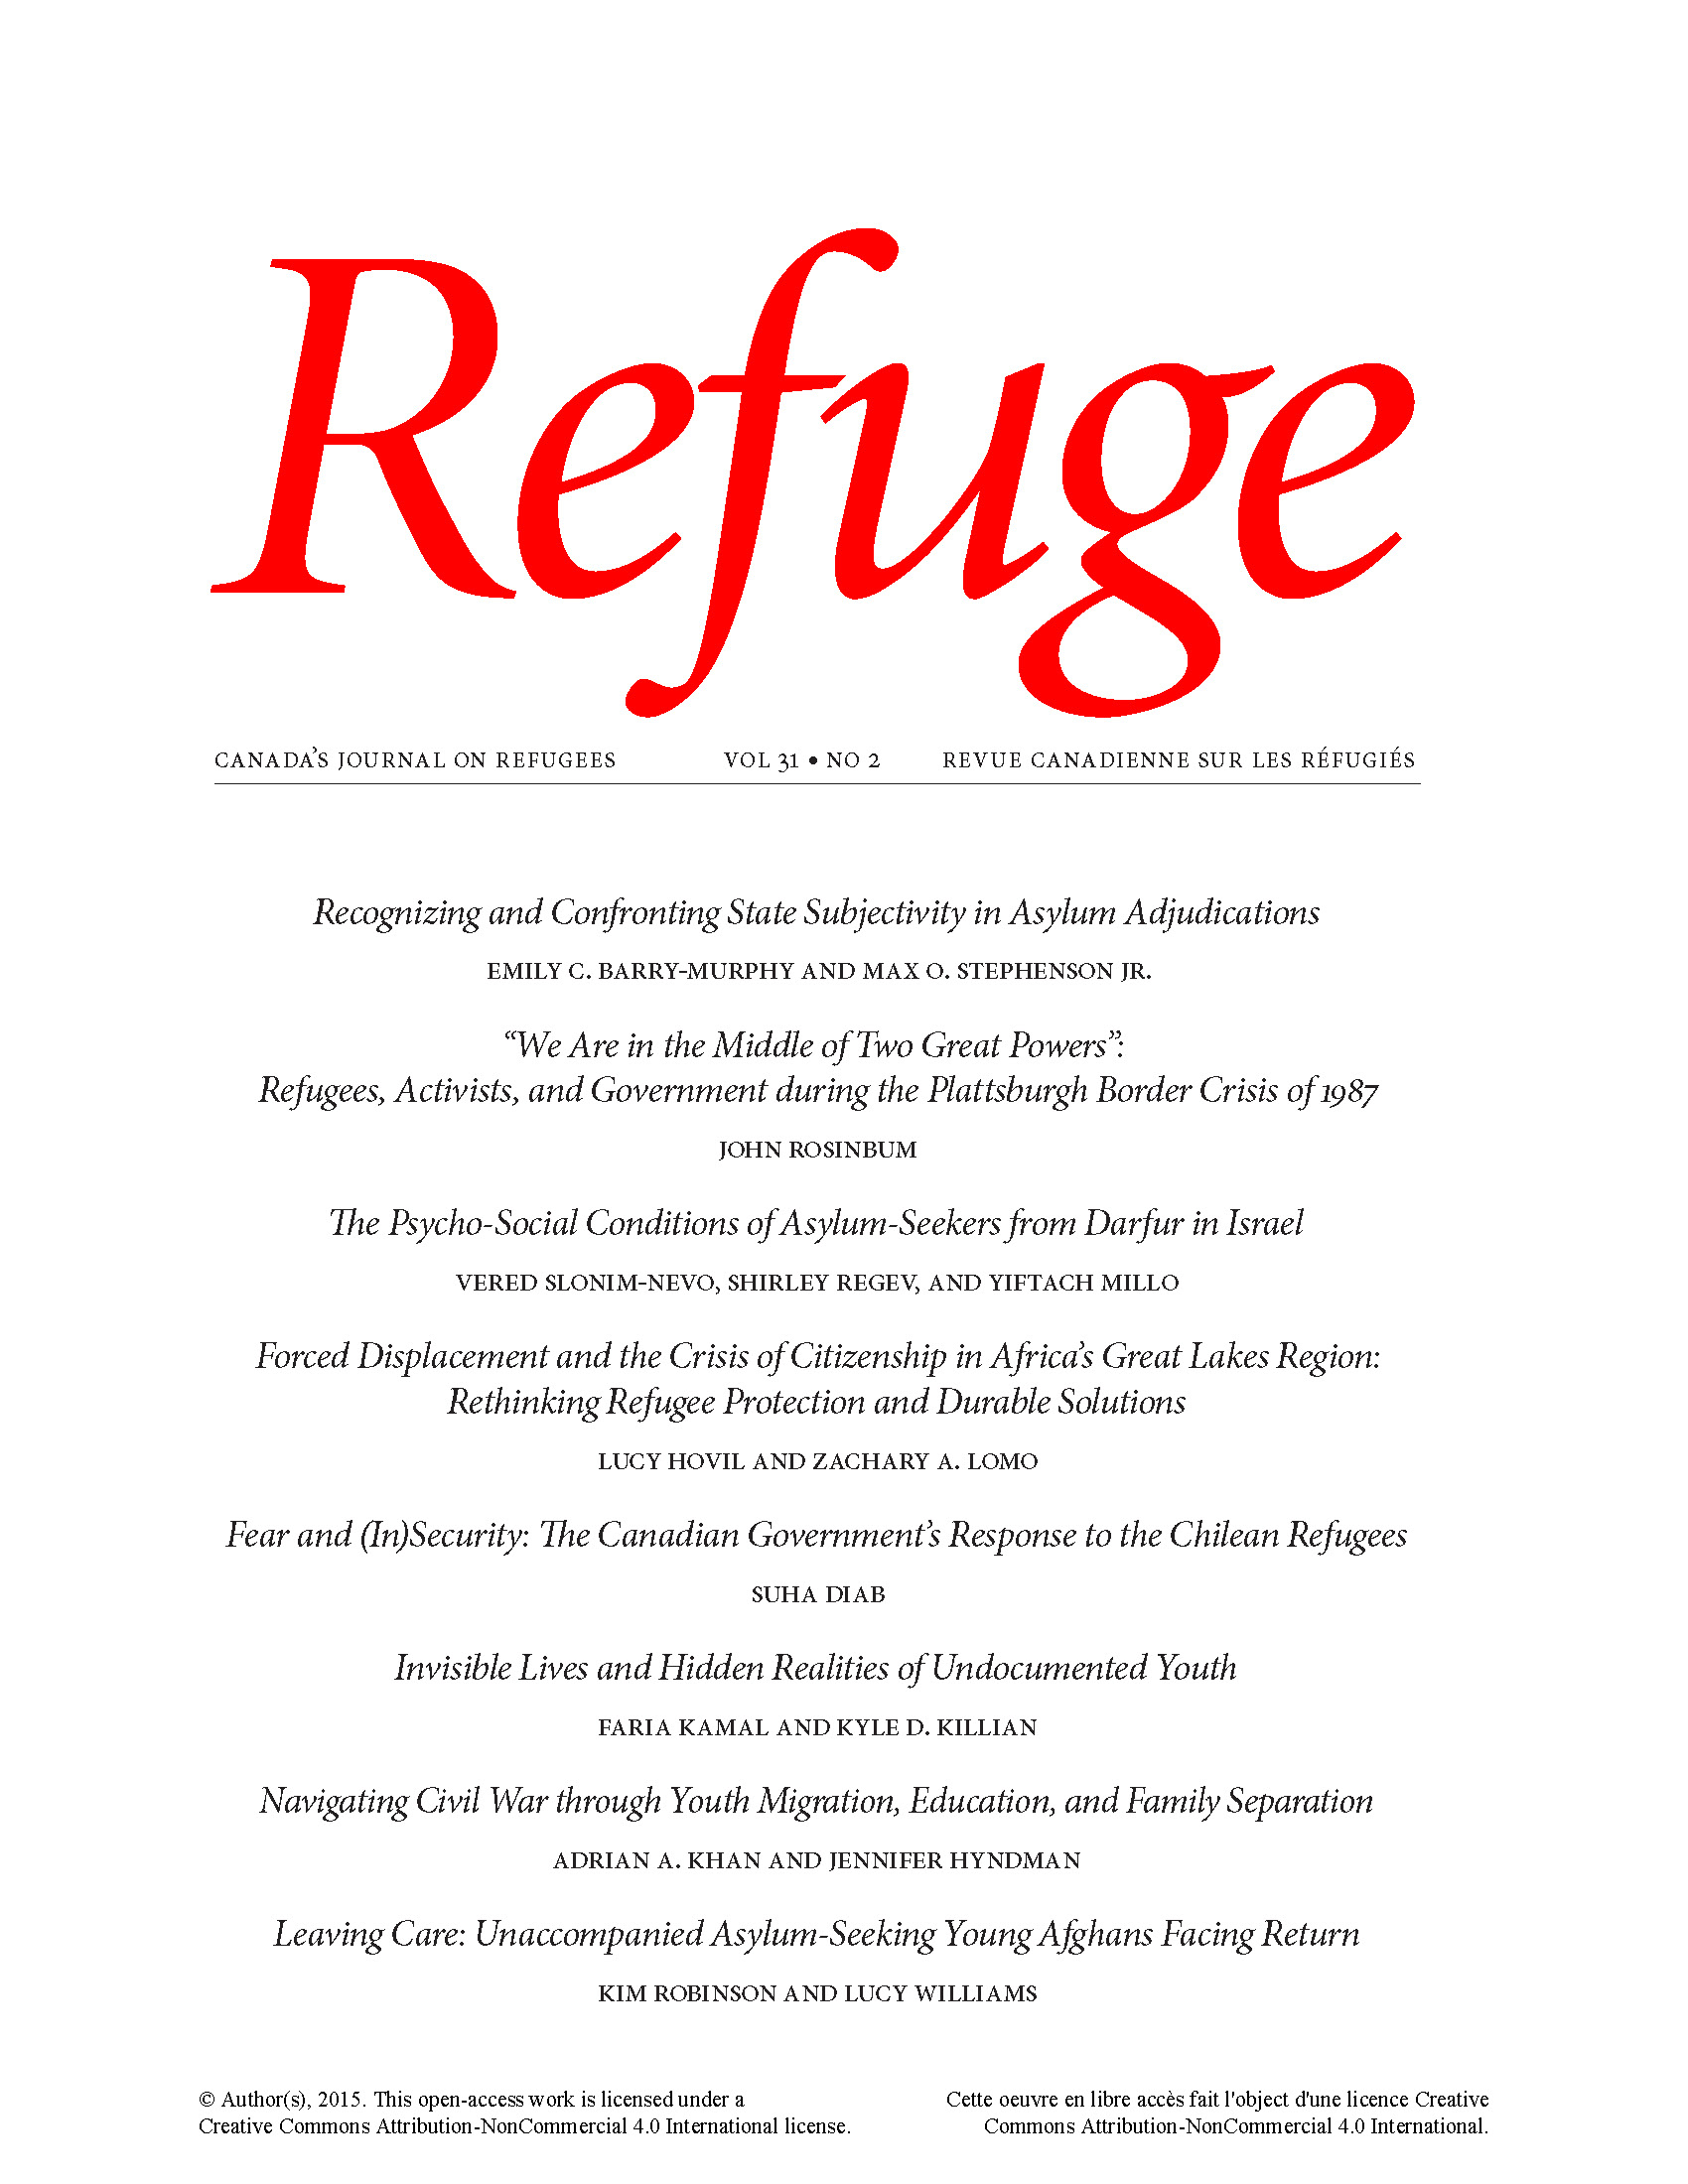 cover Refuge vol. 31.2 2015